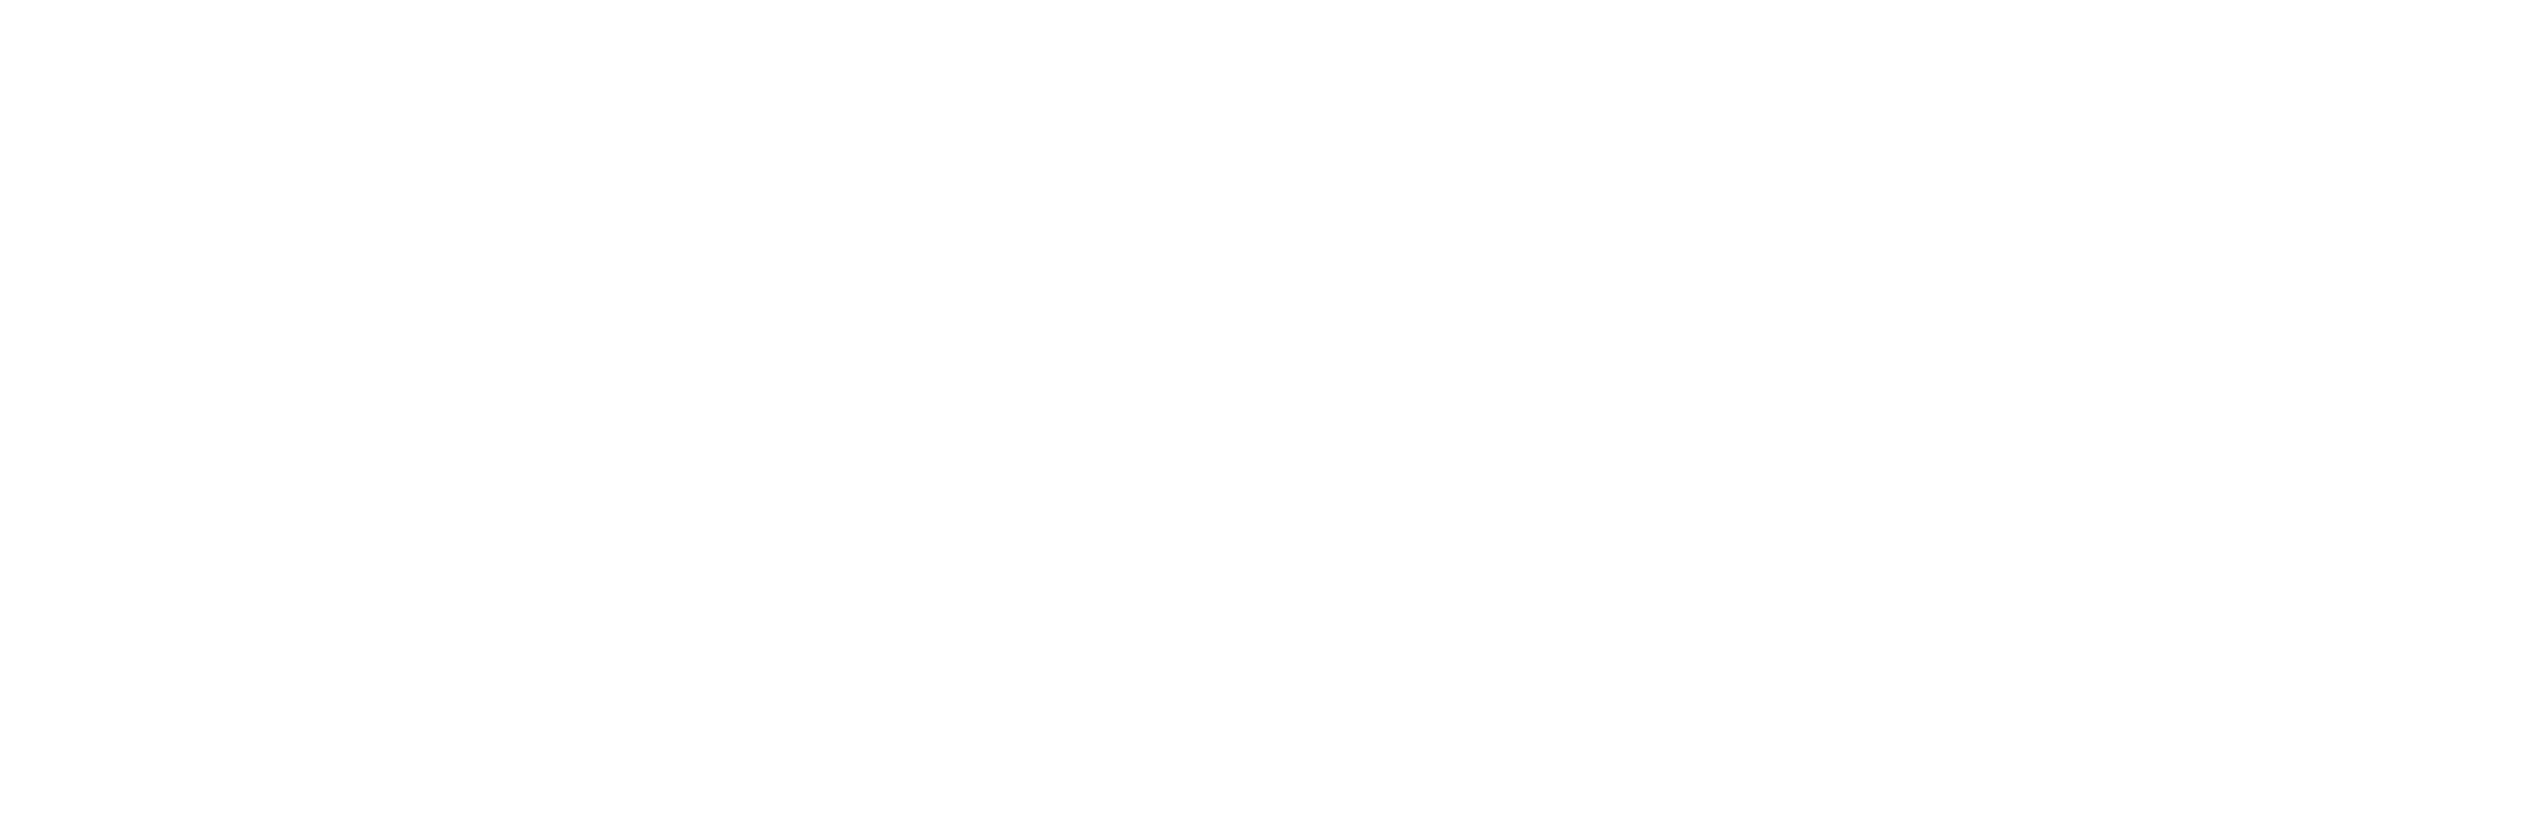 Instituto Tebas